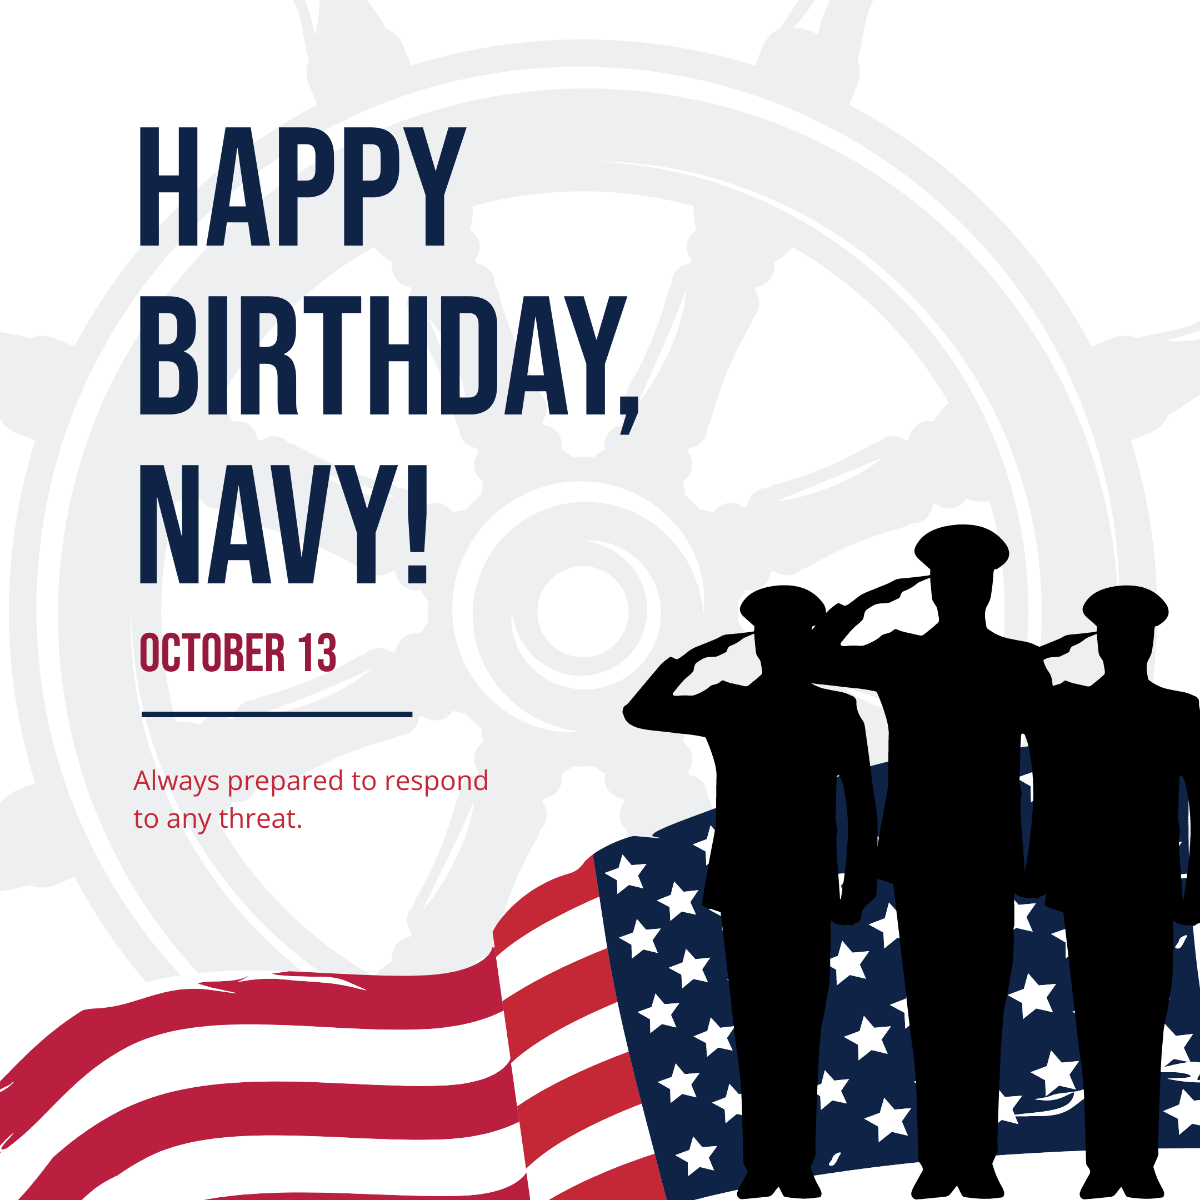 Navy Birthday FB Post